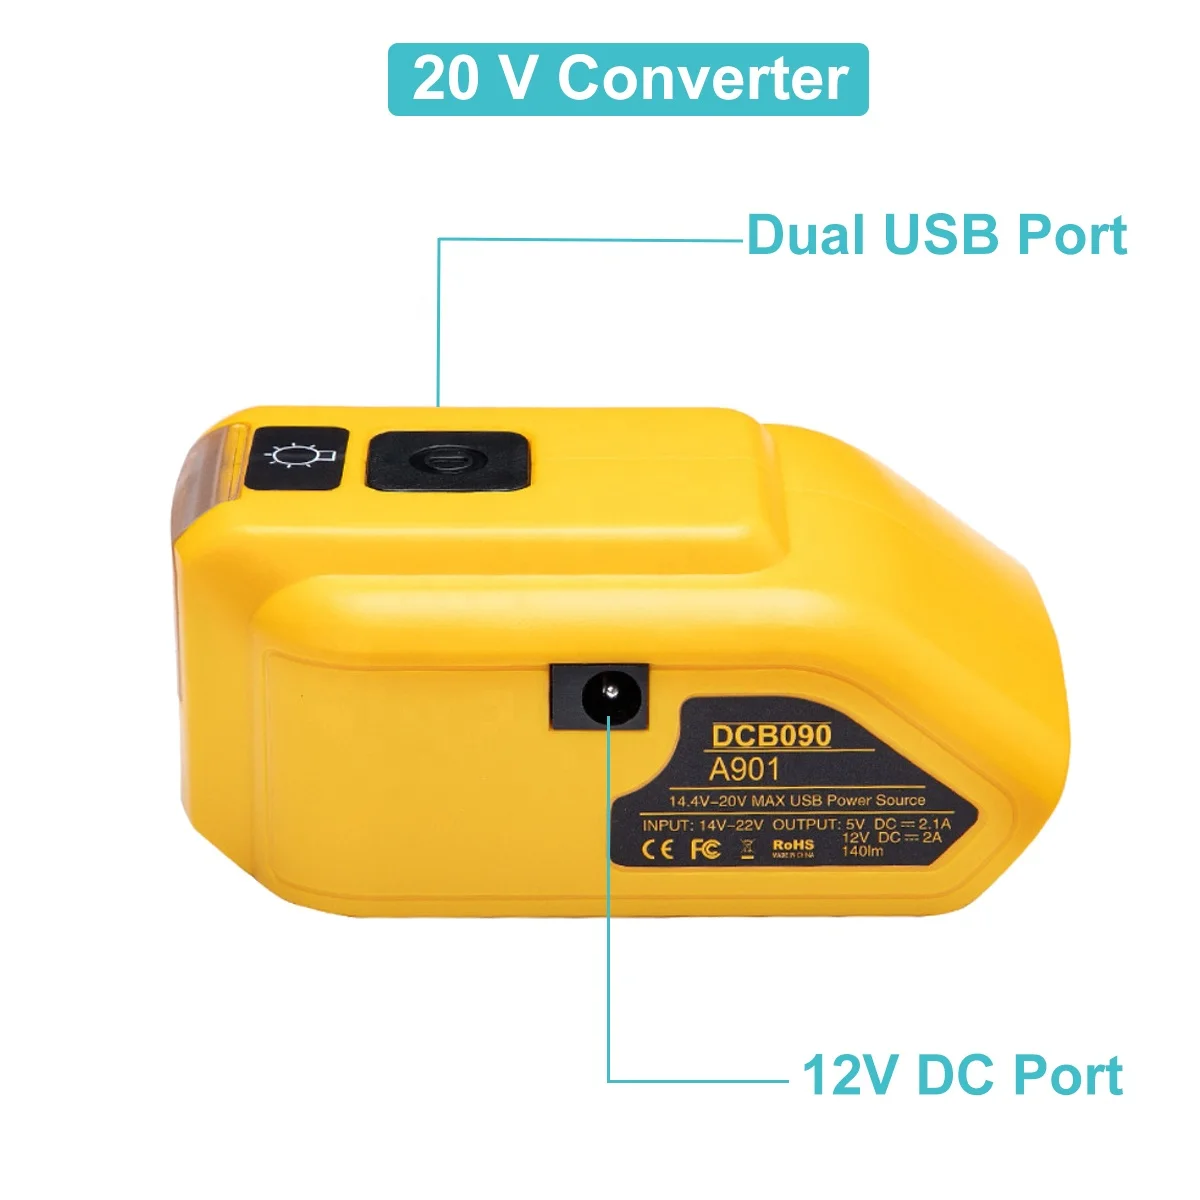 DCB090 14V-18V 2xUSB Ports Charging Dewalt Converter Adapter Charger for Dewalt 20V Lithium ion Battery With LED Work Light